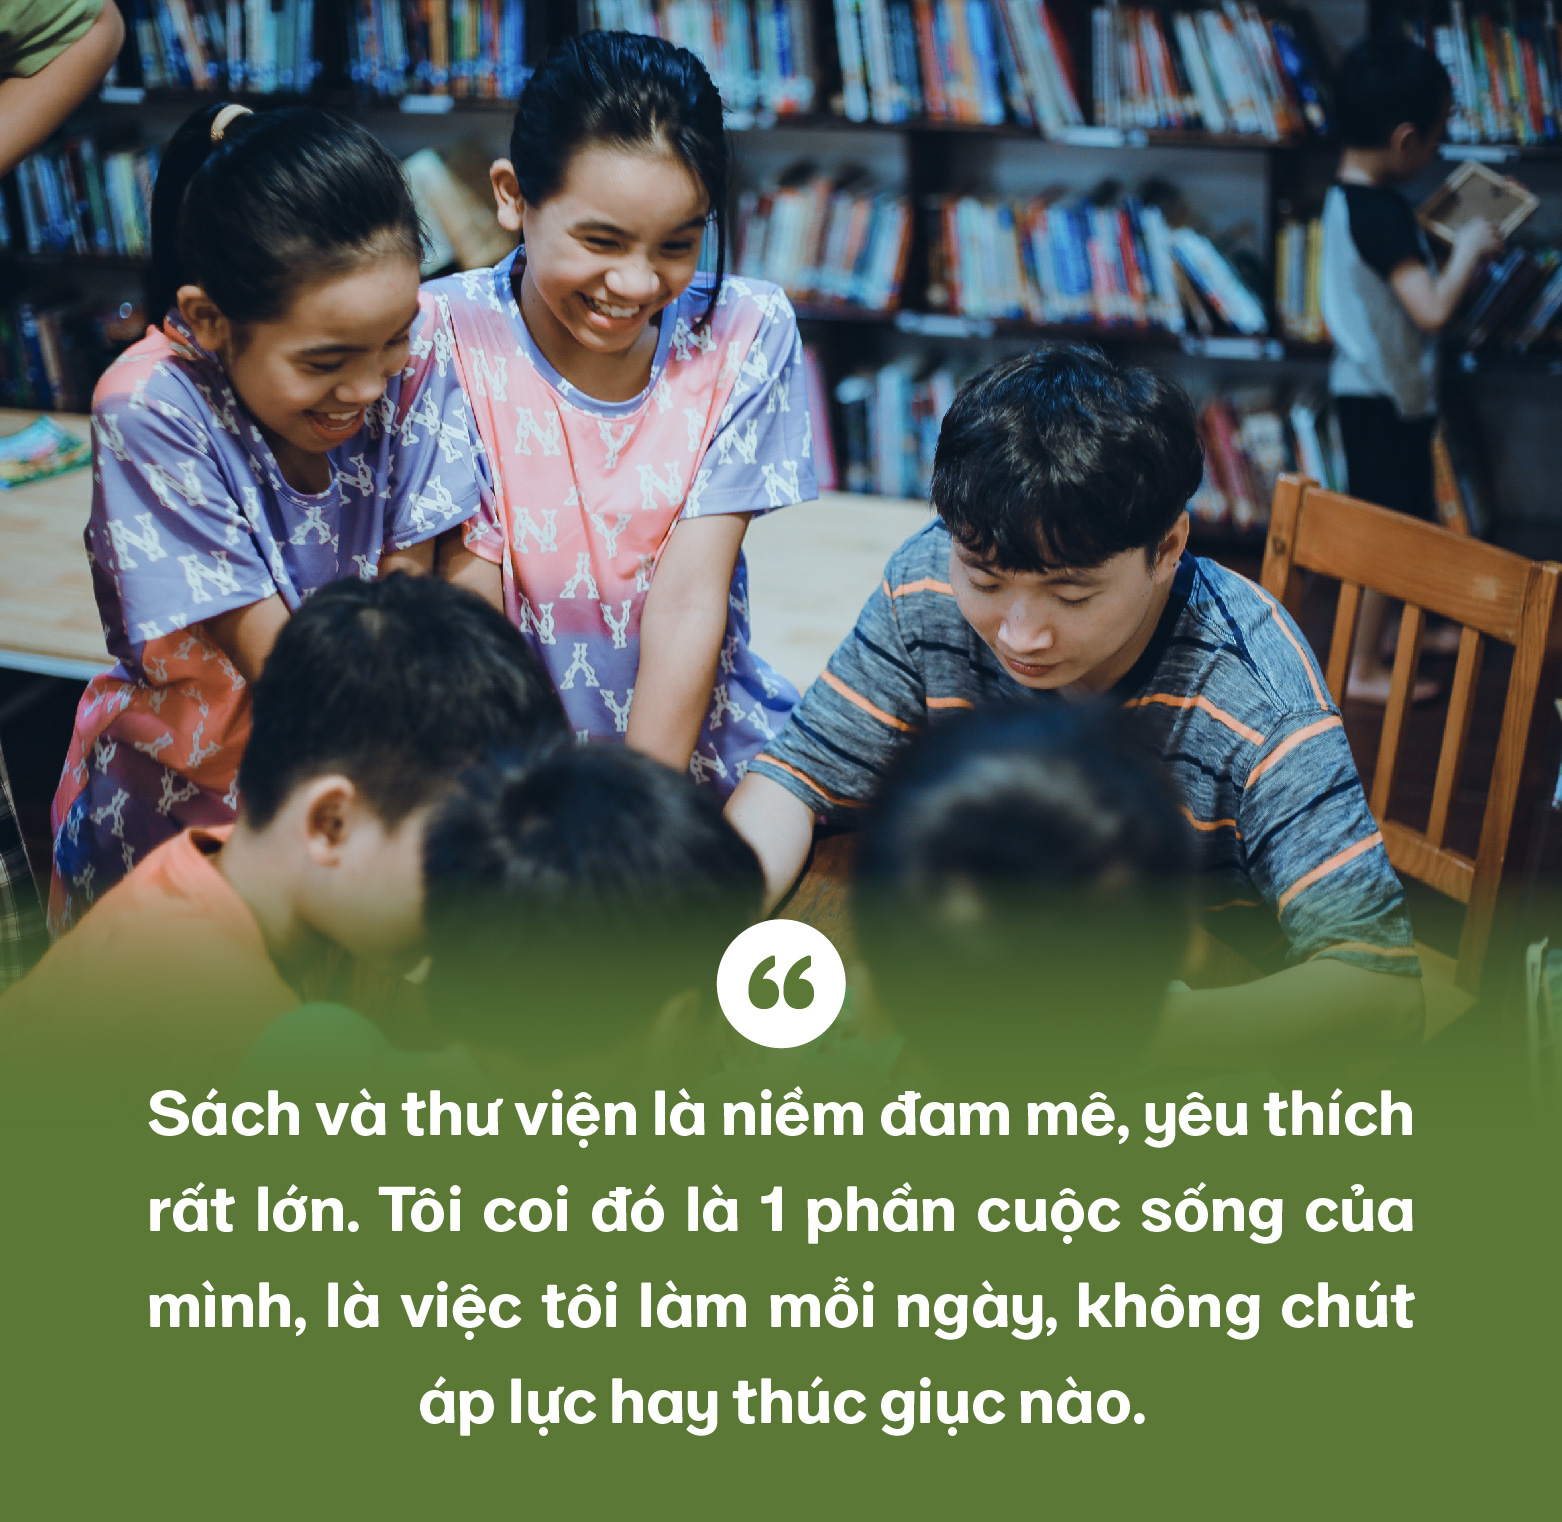 9x với giấc mơ tạo ra những điều kỳ diệu với sách, lan tỏa văn hóa hóa đọc khắp Việt Nam - Ảnh 2.